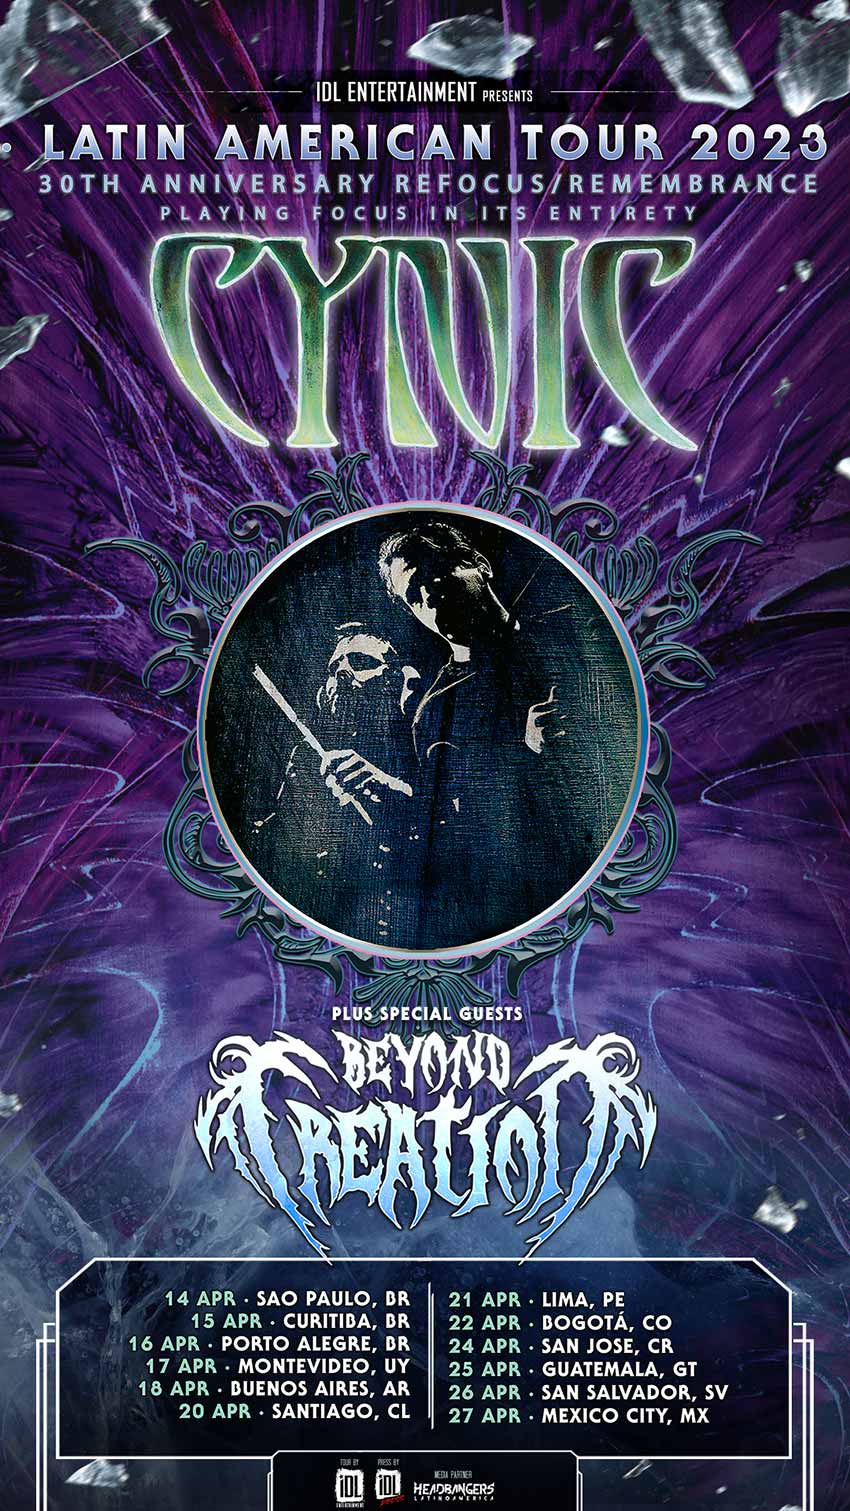 Cynic Beyond Creation Latin America tour dates